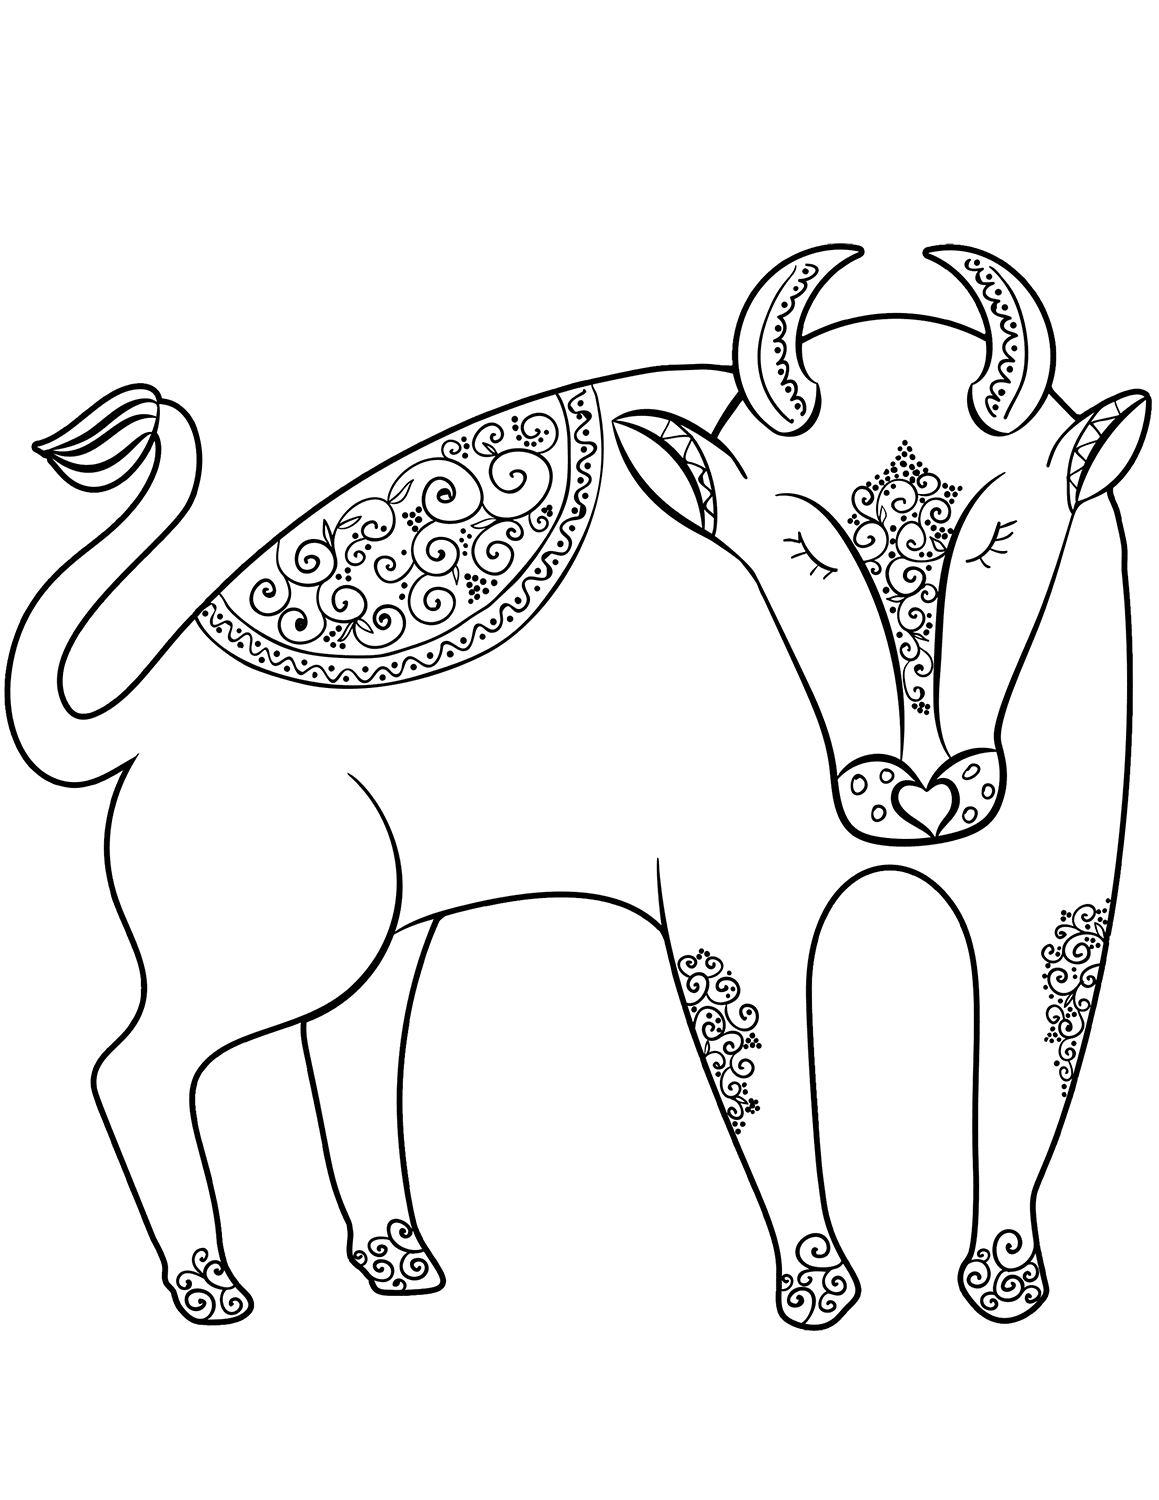 Trang màu cung hoàng đạo Taurus